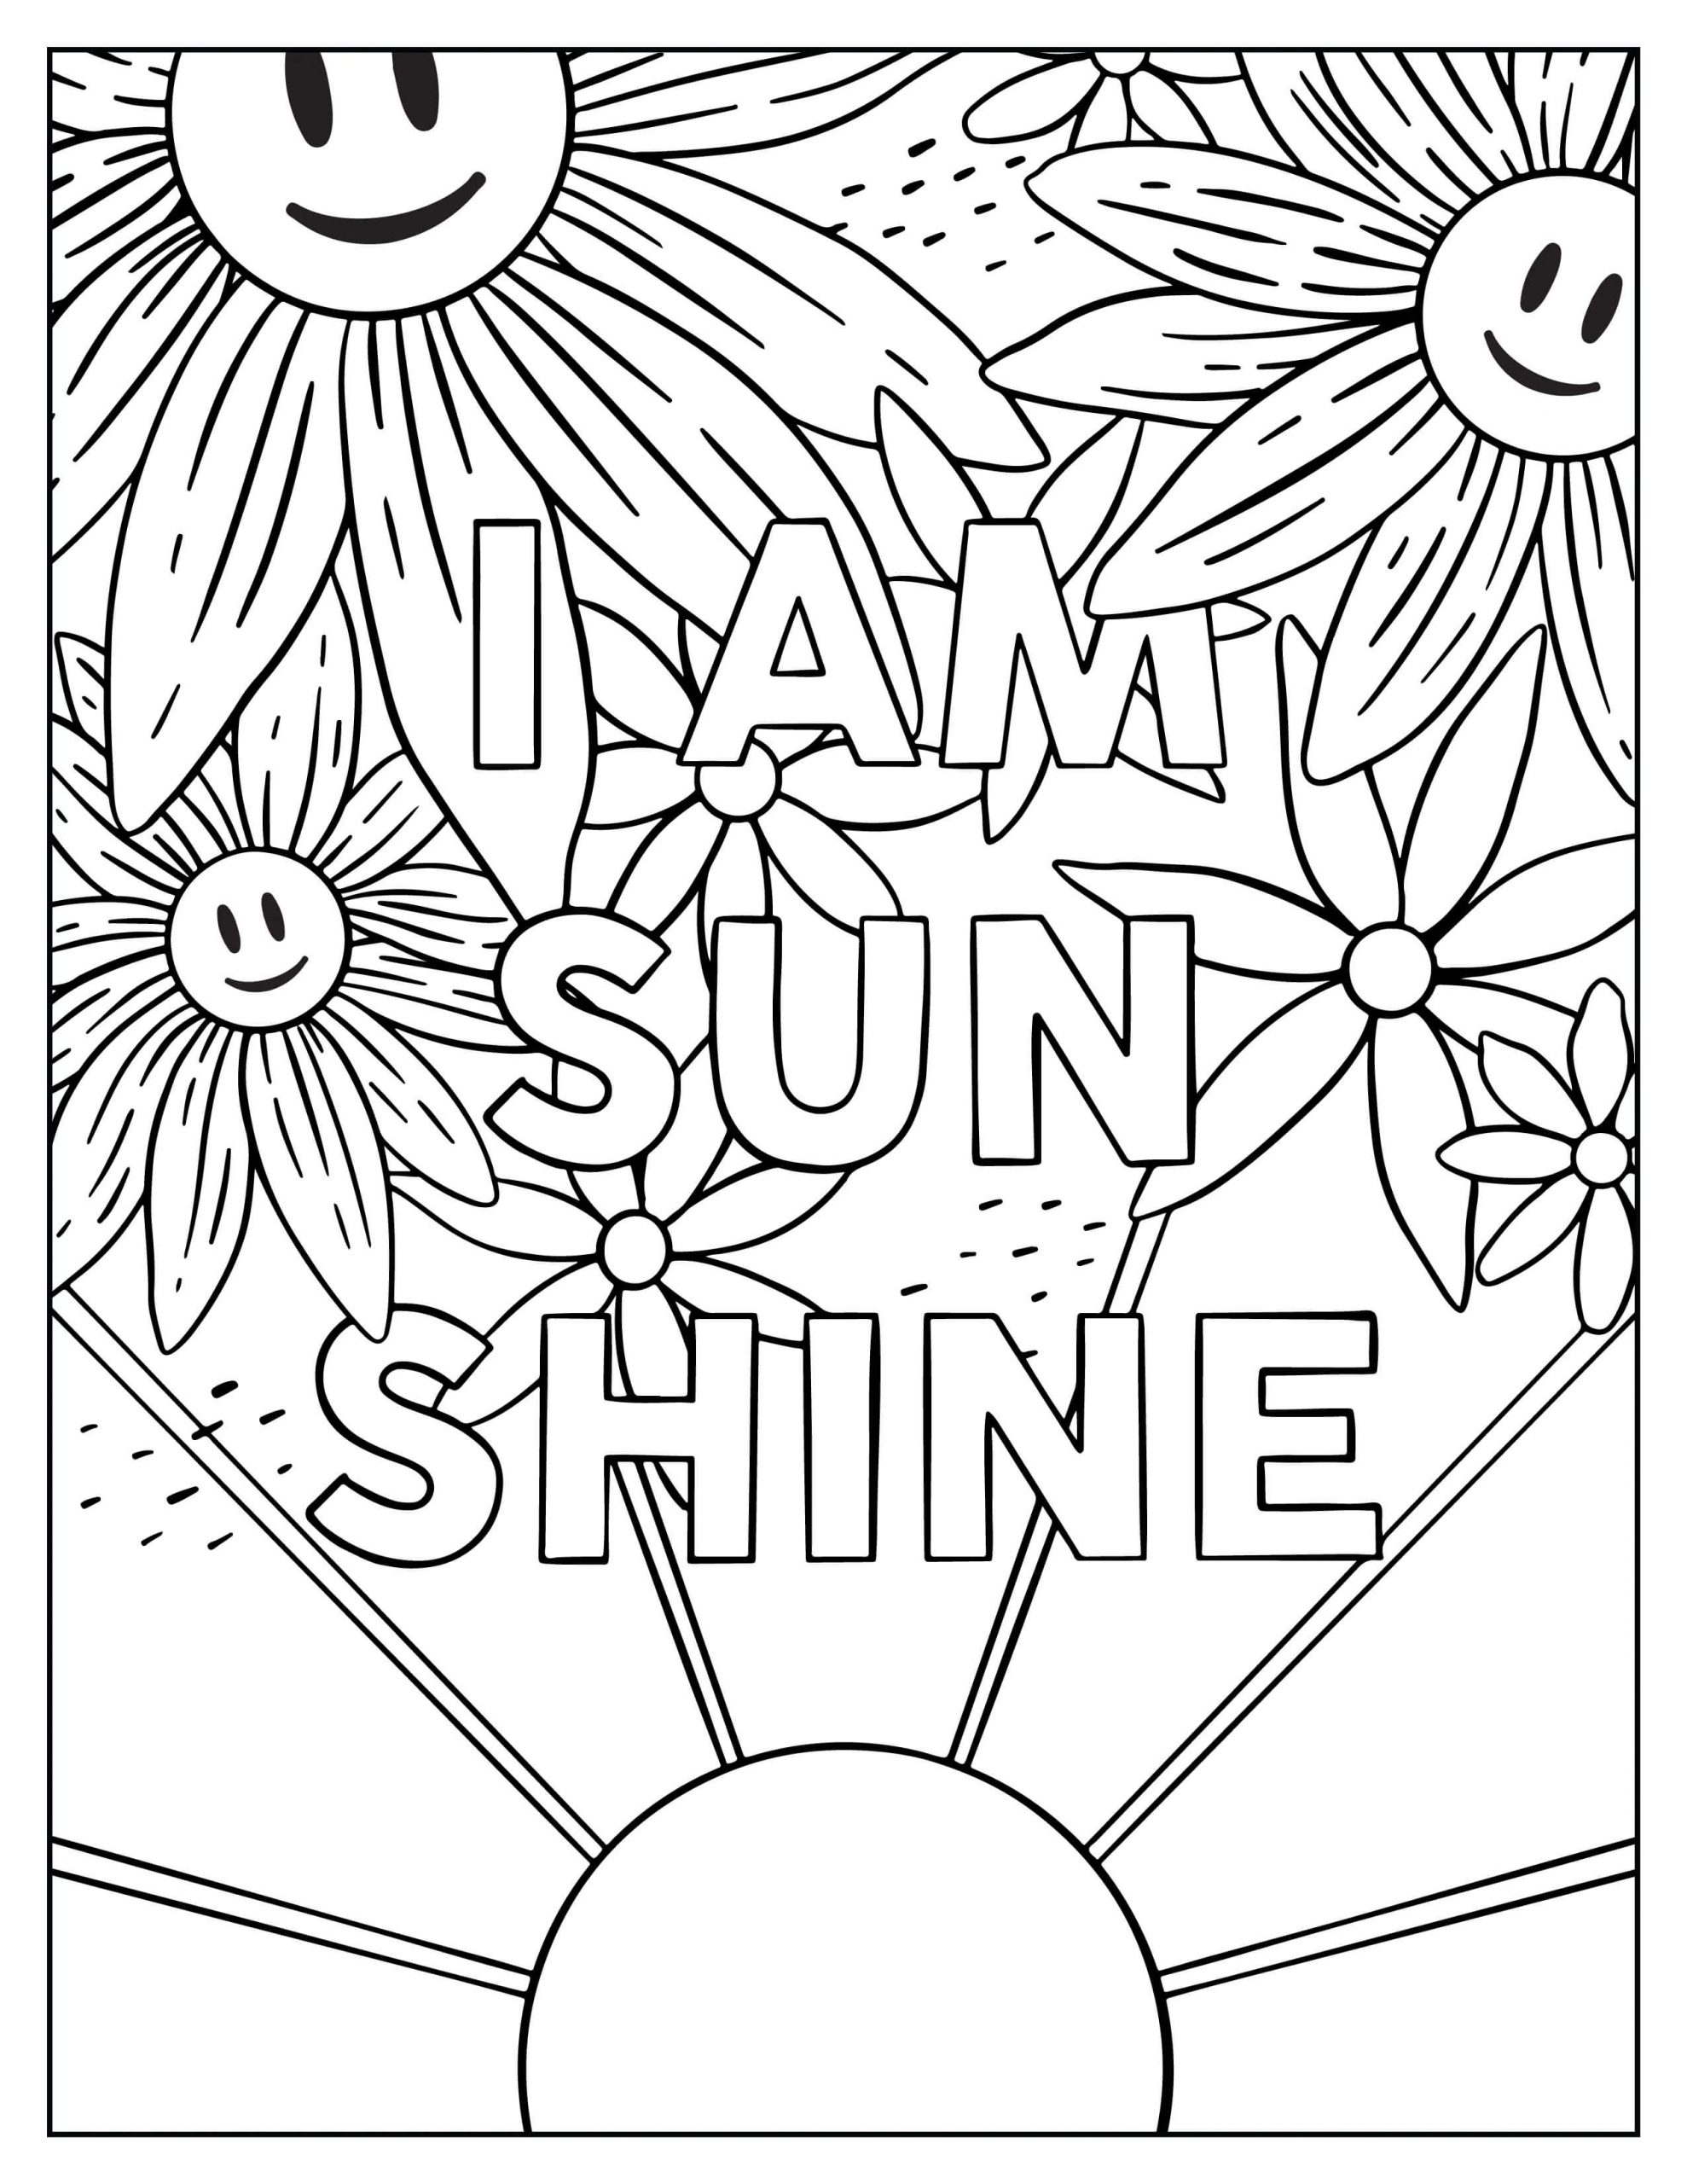 나는 봄의 햇살 coloring page